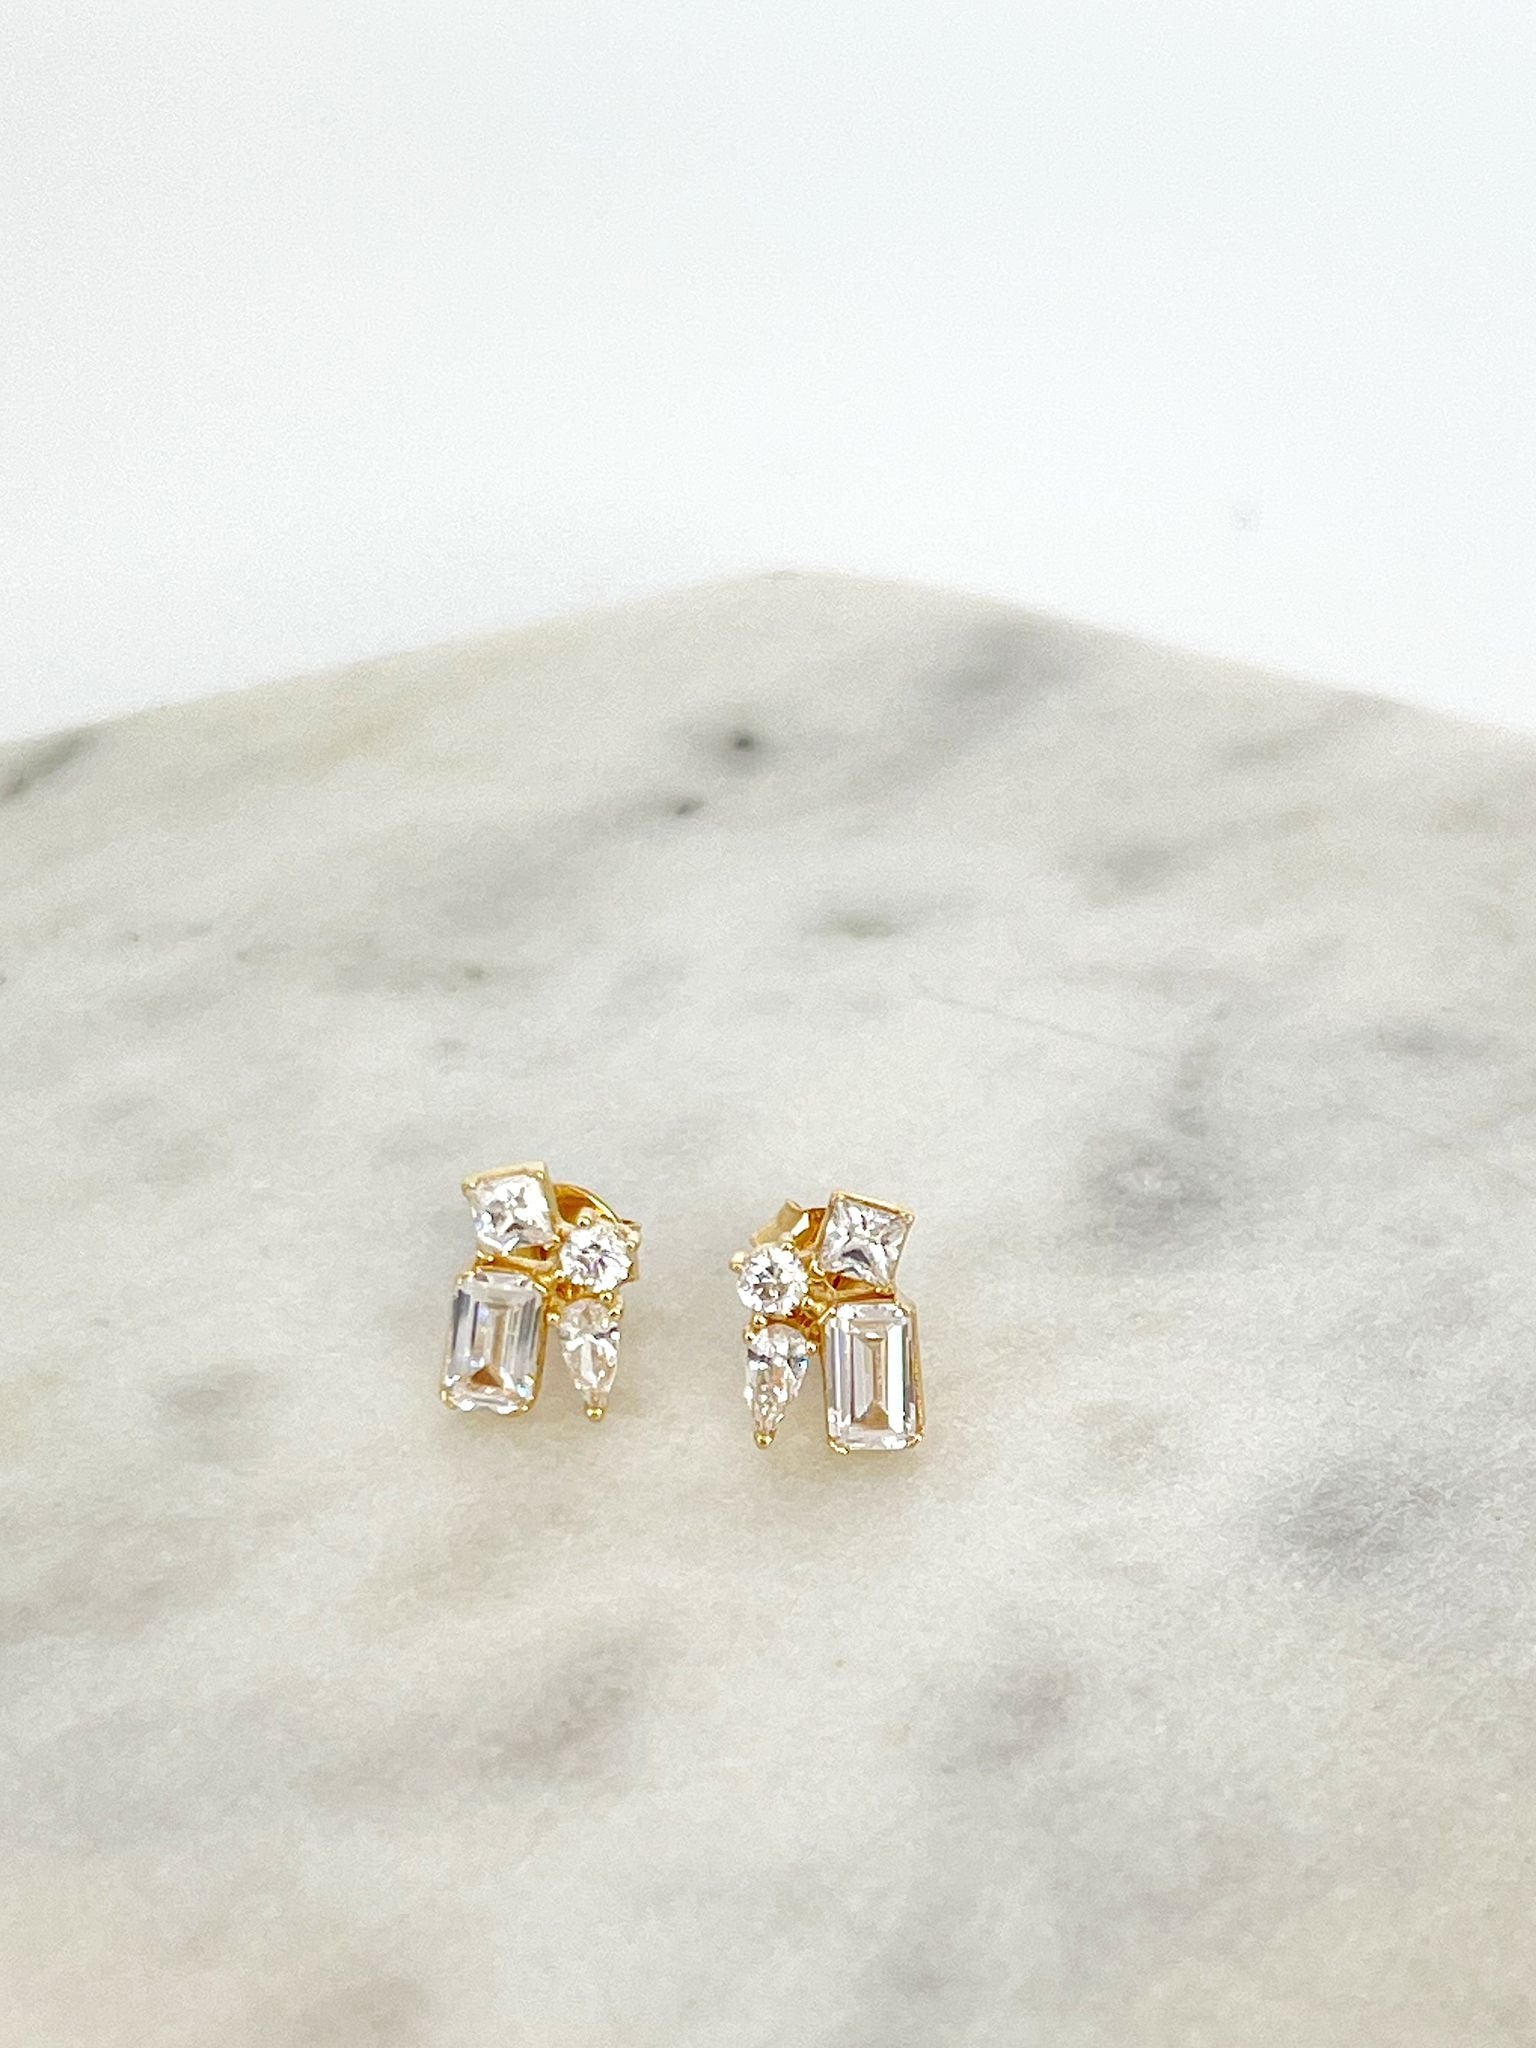 Cristal’s gold earrings